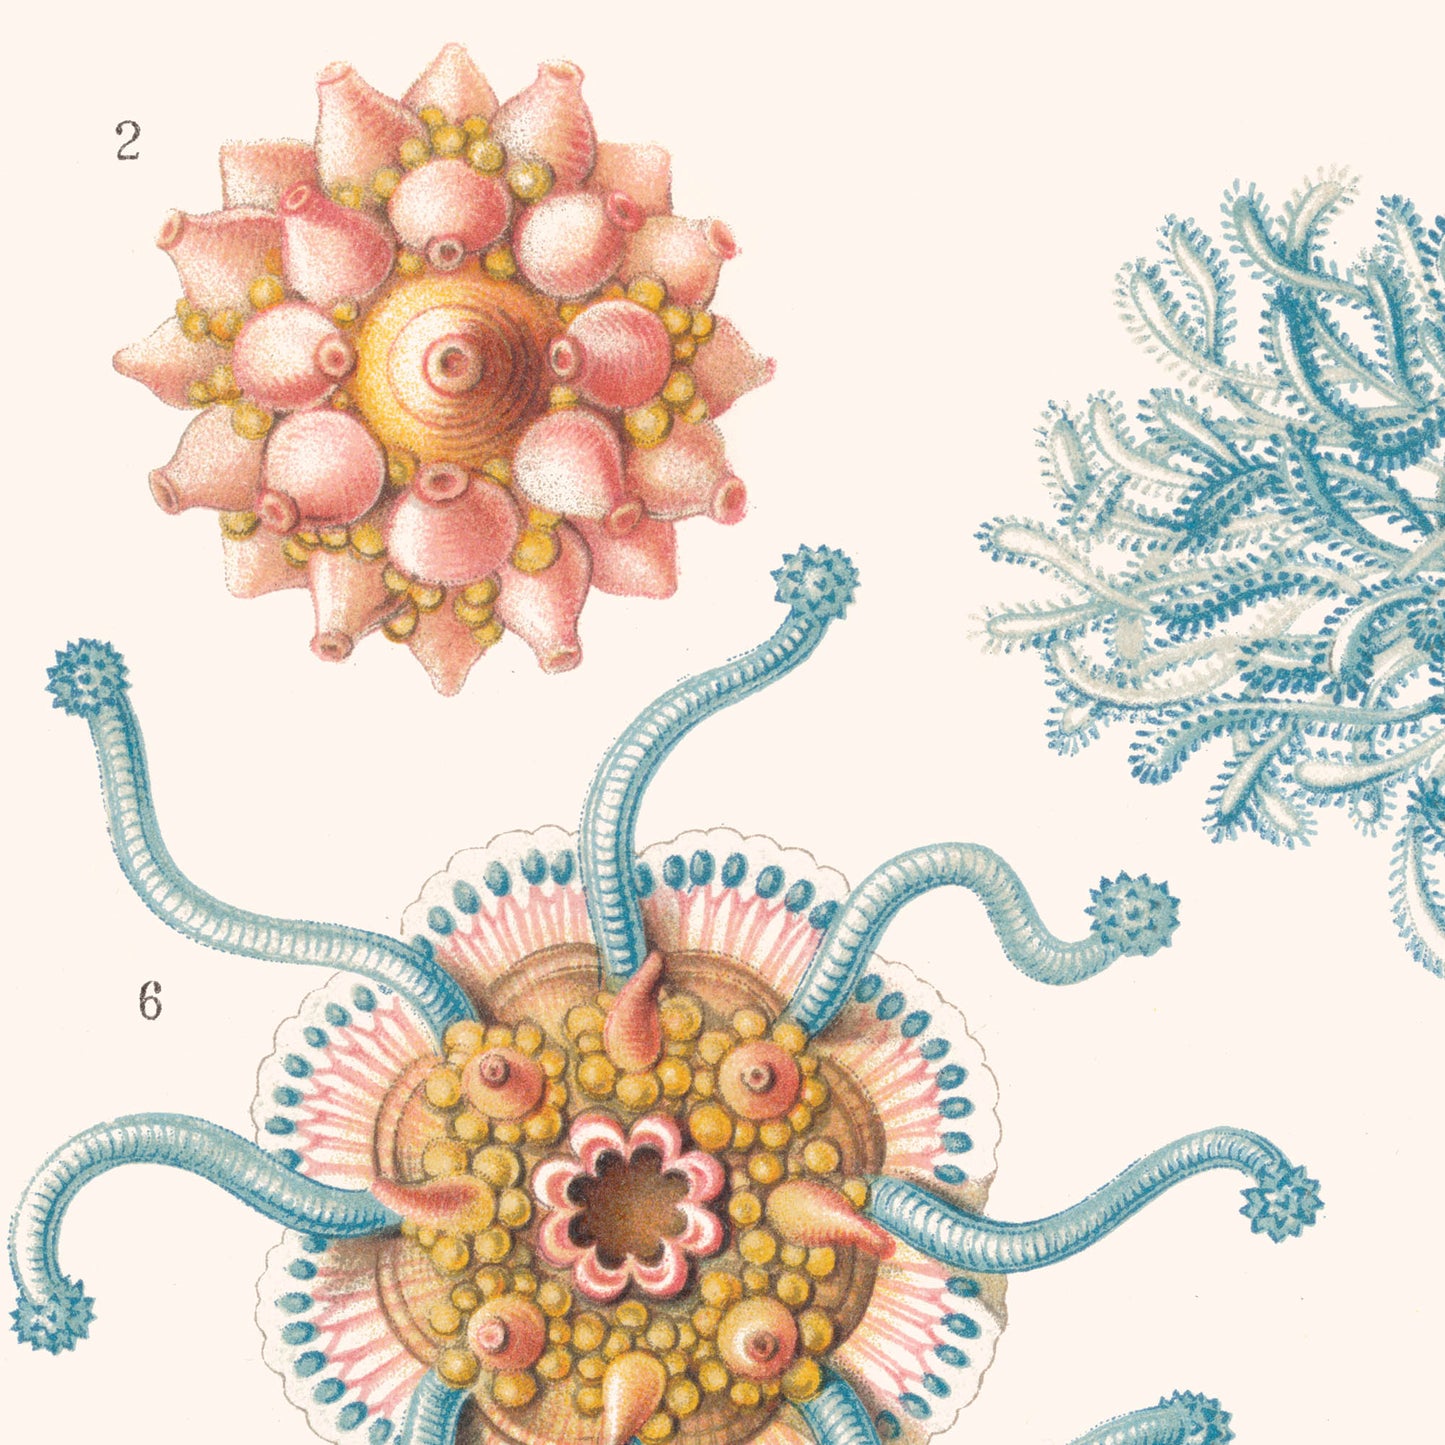 Affiche : Hydromedusen - Ernst Haeckel